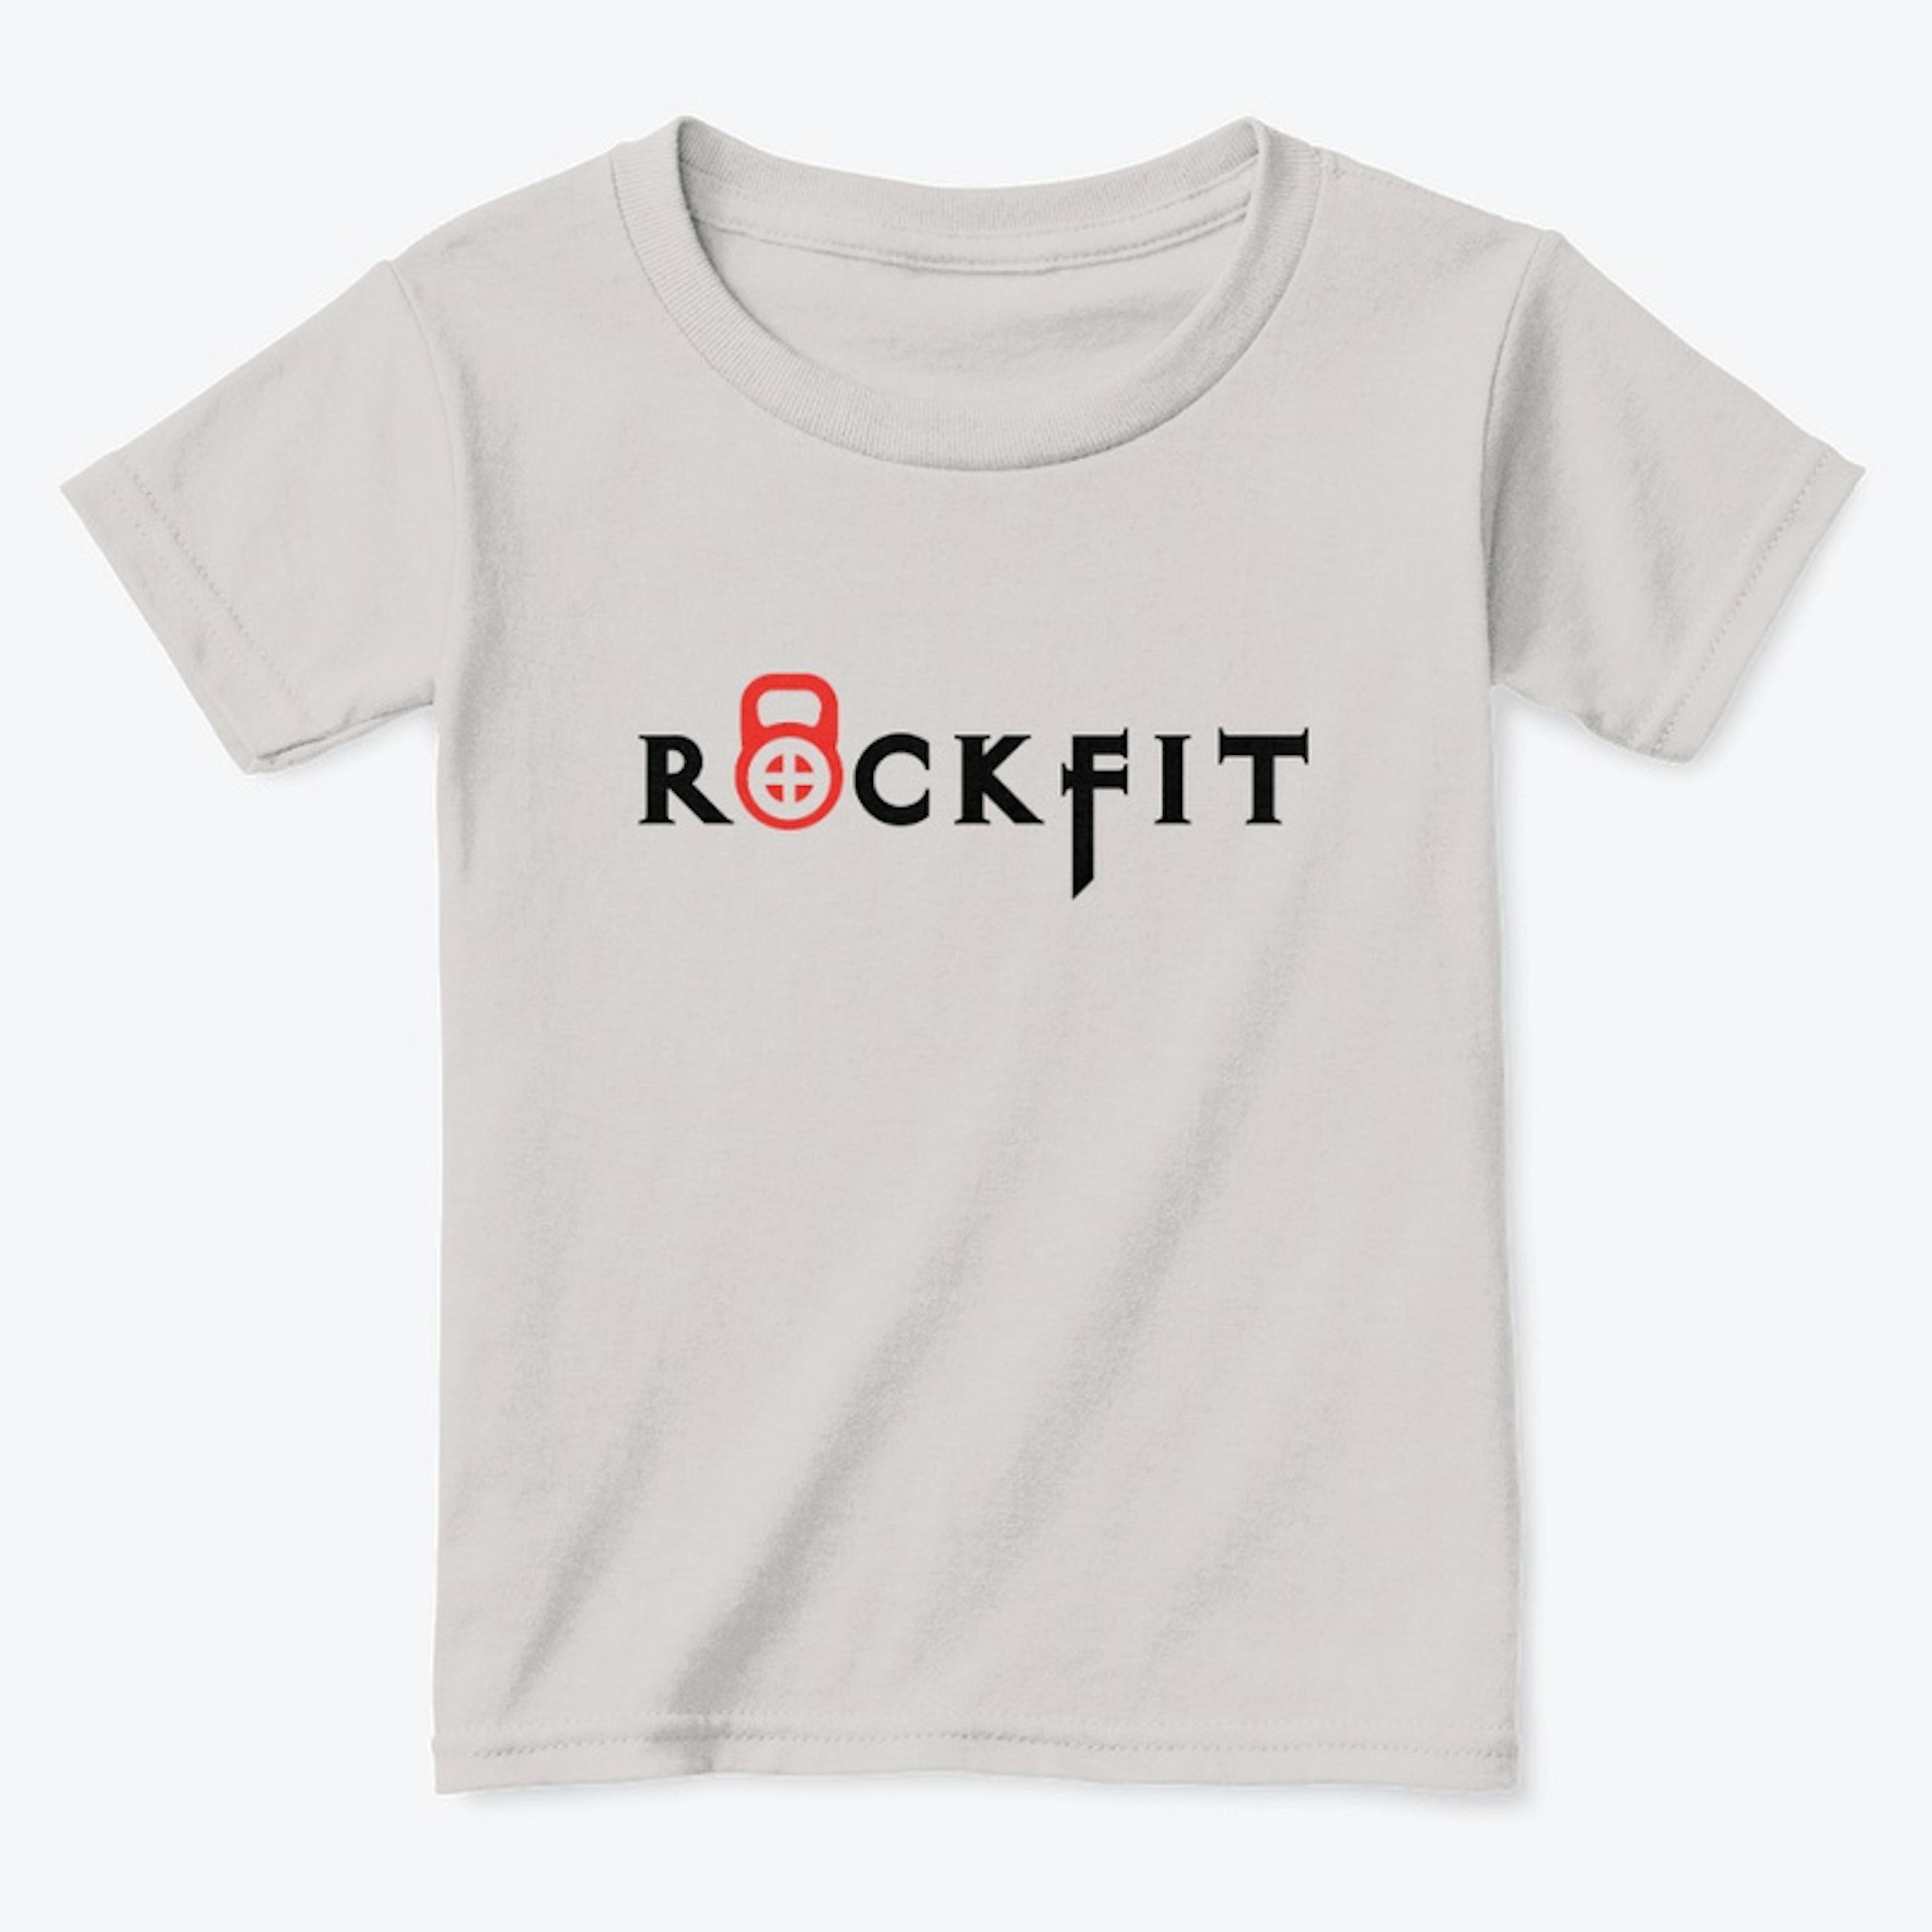 Rockfit Toddler Grey Shirt